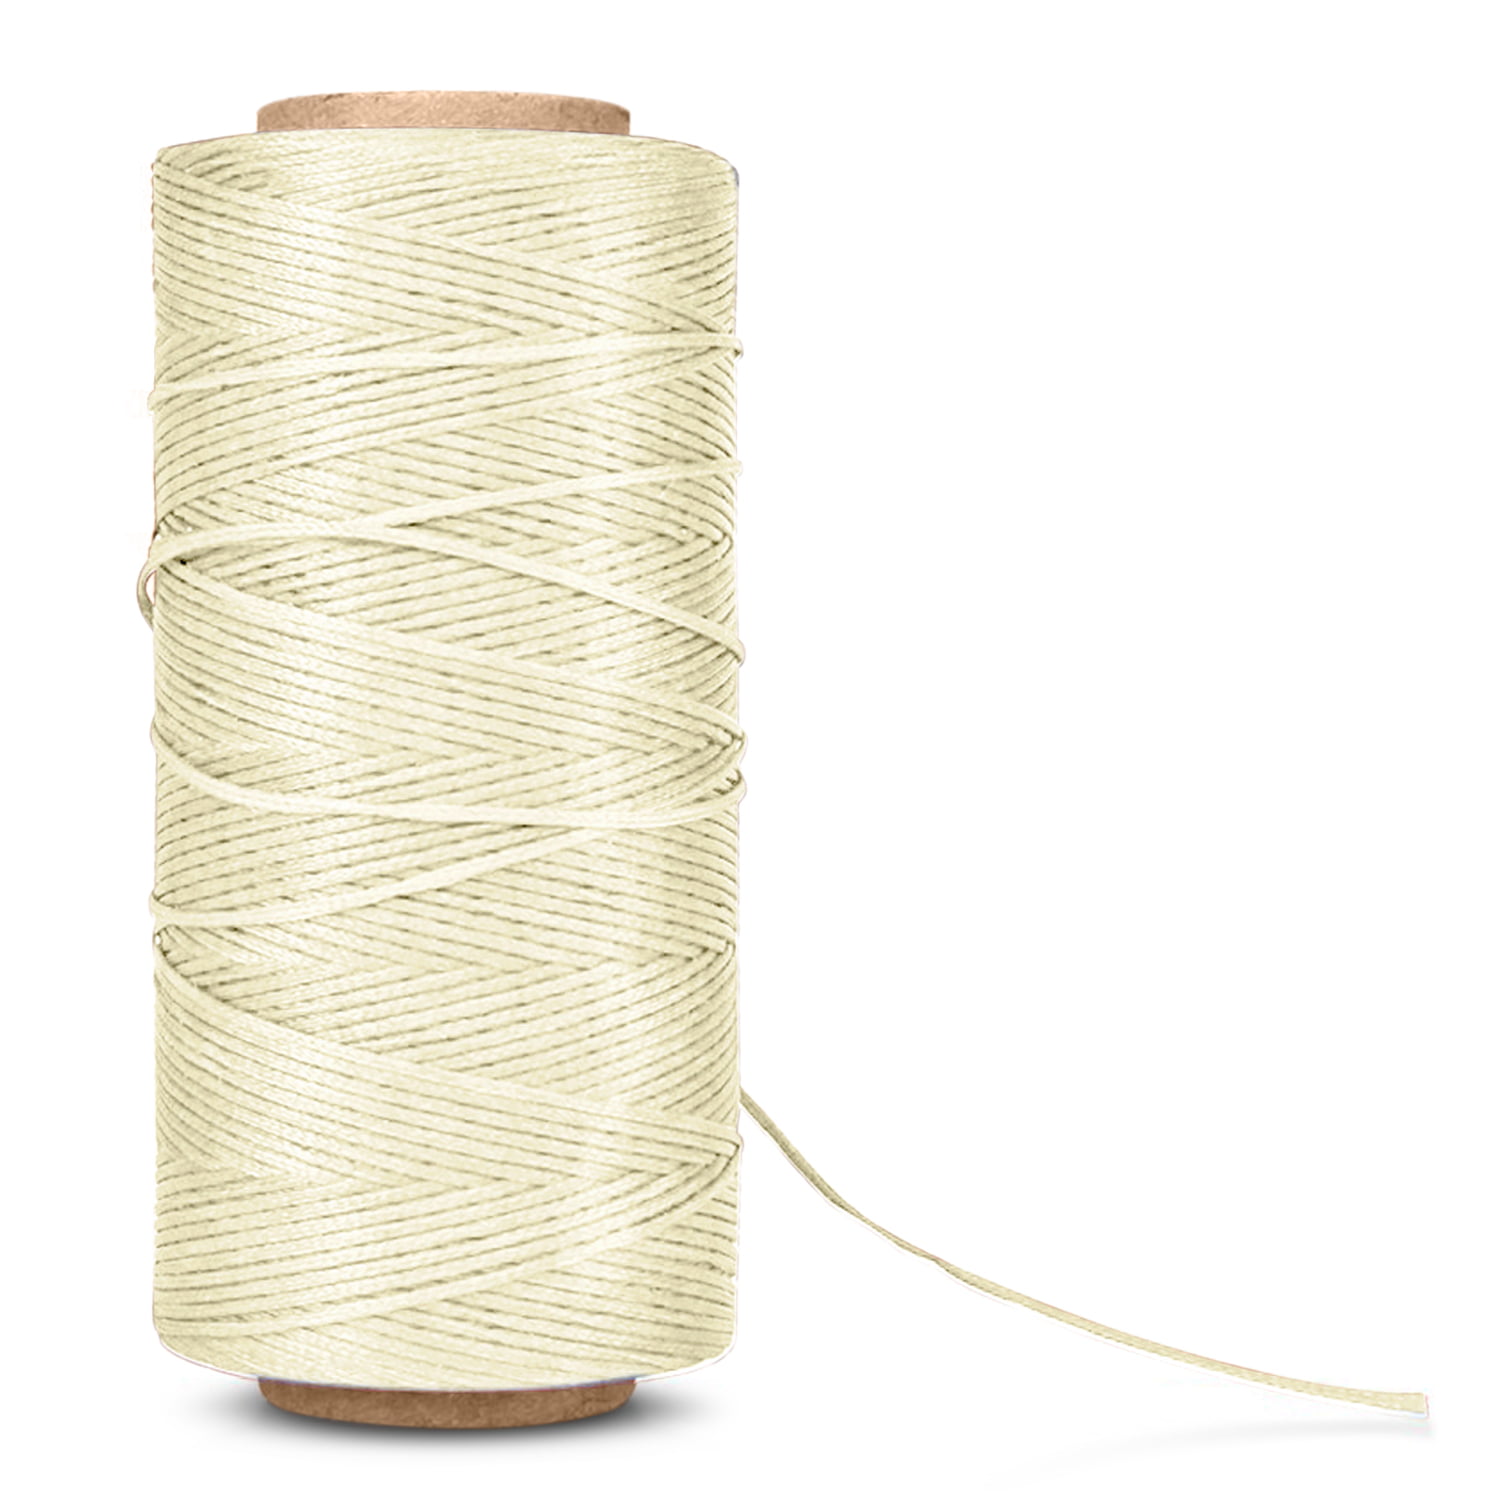 260M Waxed Thread Wax String Cord Sewing Craft Tool DIY Handicraft